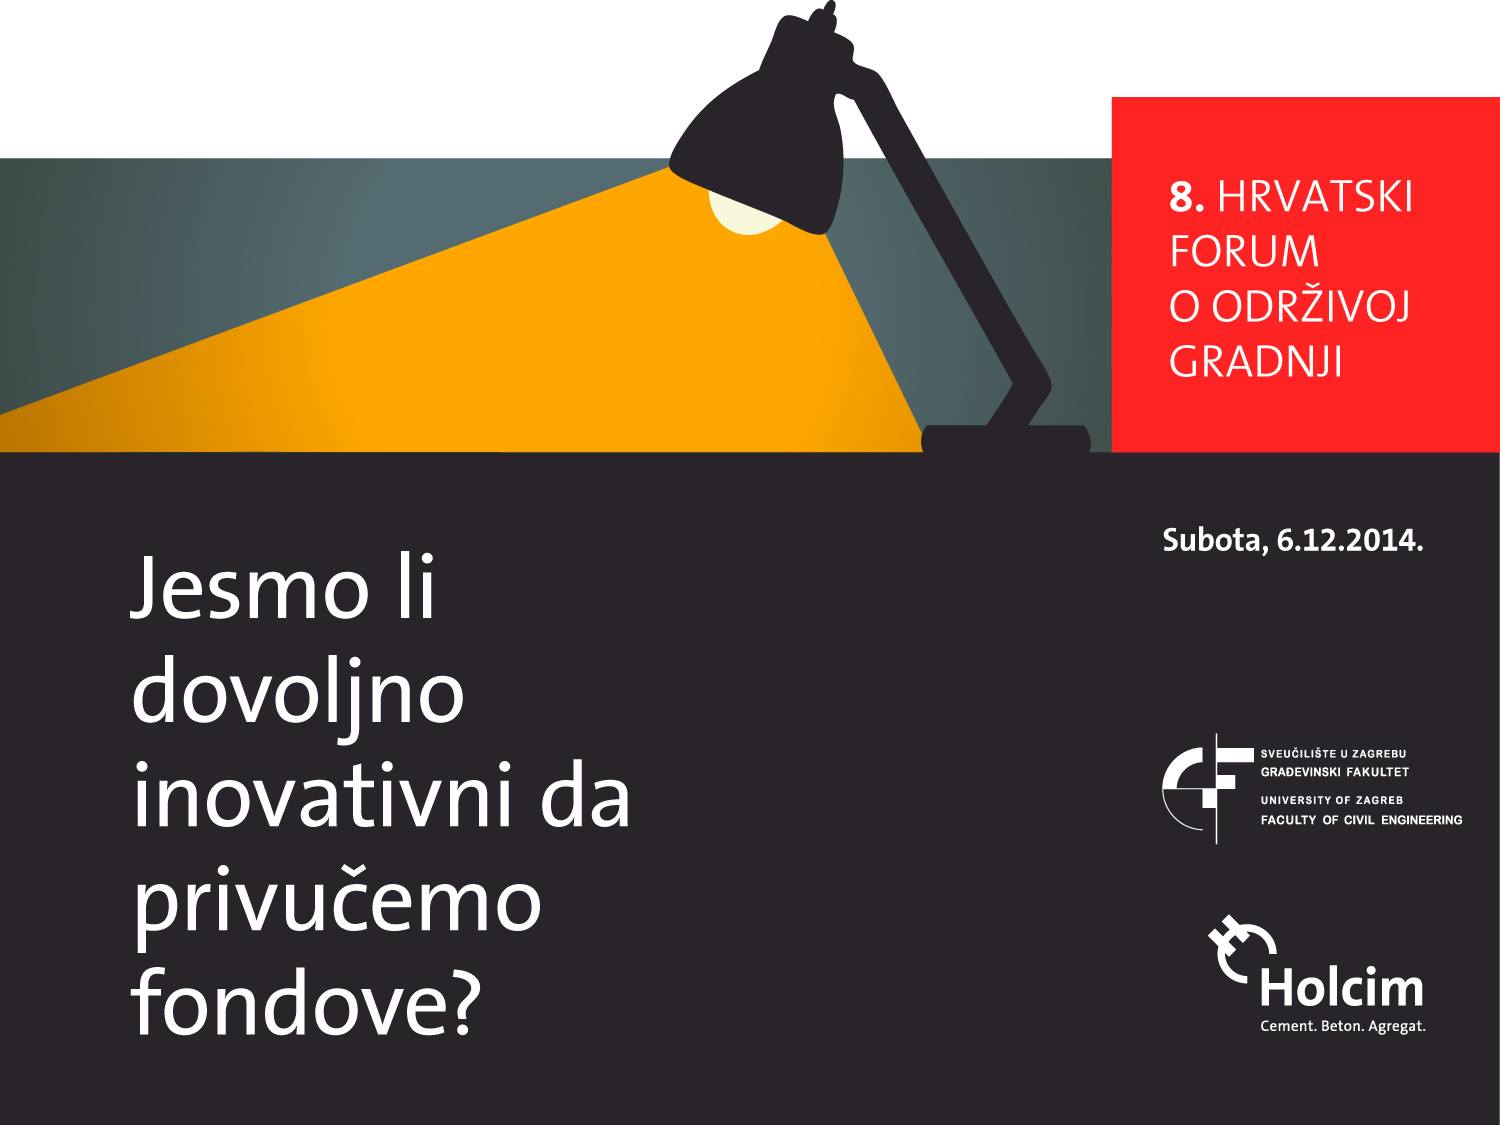 8. Hrvatski forum o održivoj gradnji